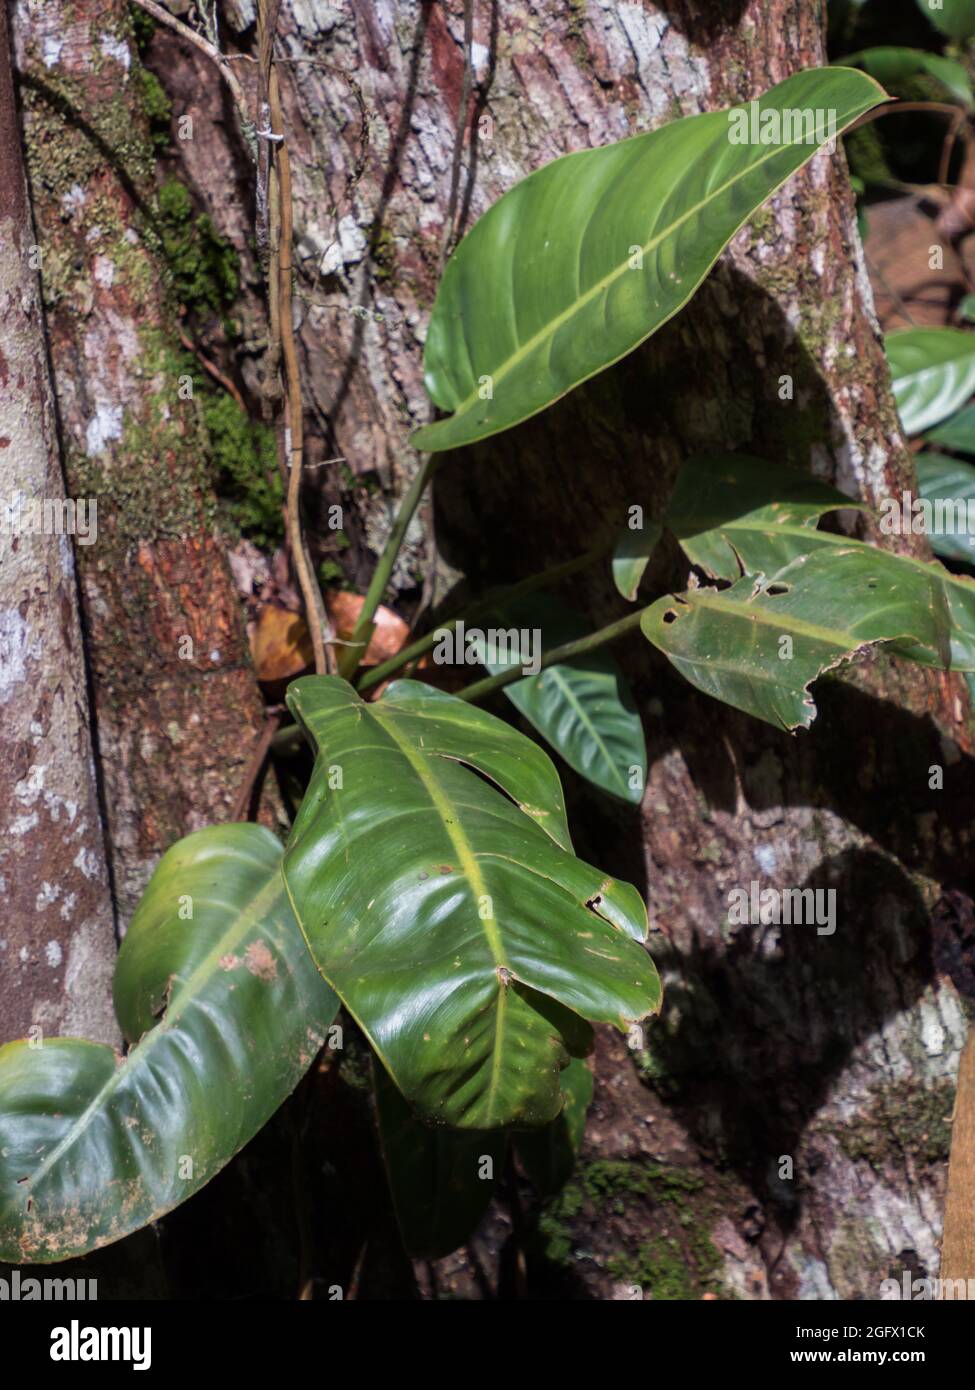 Albero coperto di bromeliad trovato nella giungla amazzonica. Le bromeliadi sono piante che sono adattate ai climi differenti. Amazzonia. Brasile, Sud America. Foto Stock